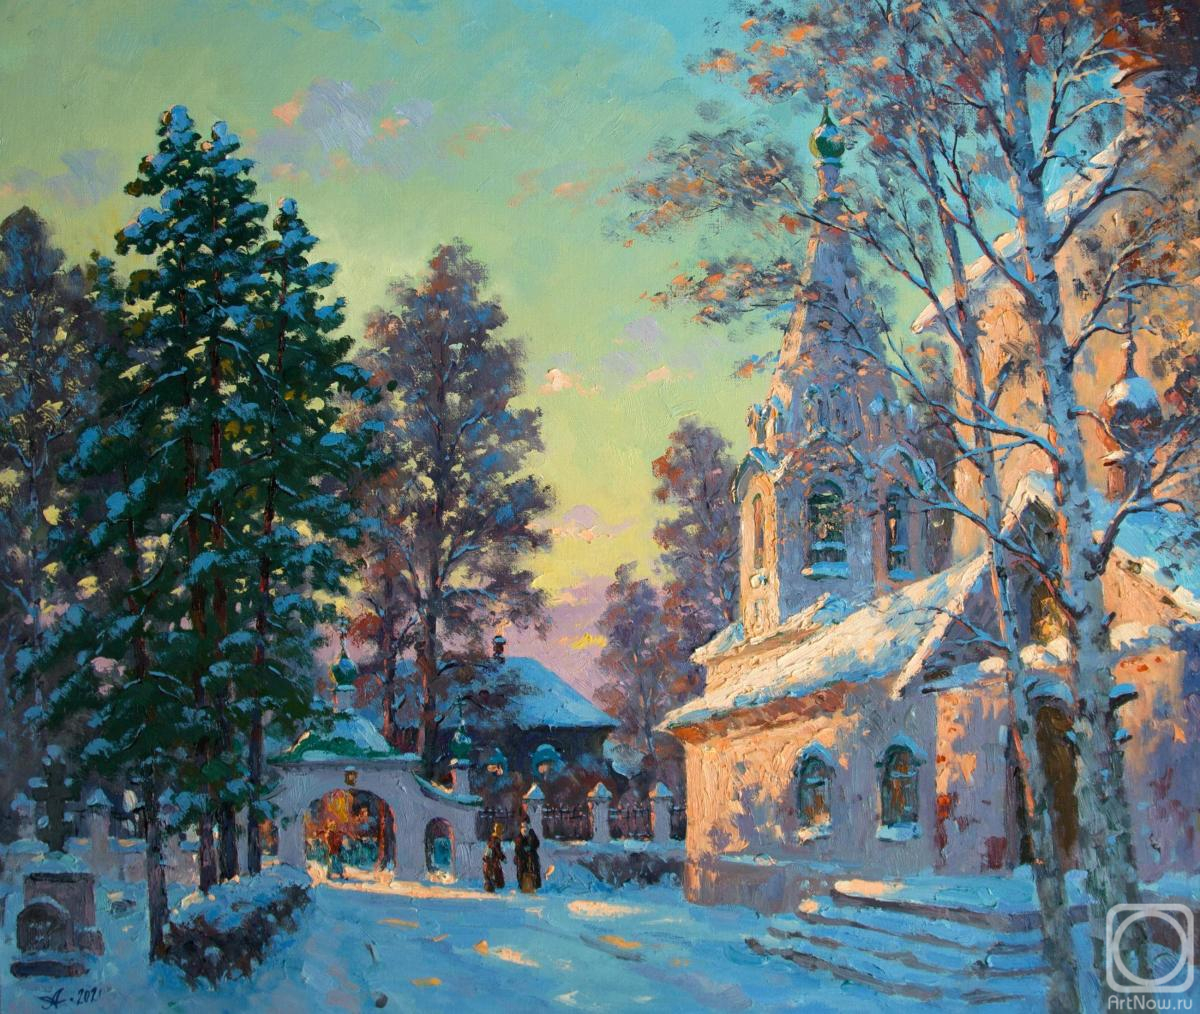 Alexandrovsky Alexander. Kostroma, Sloboda in Winter